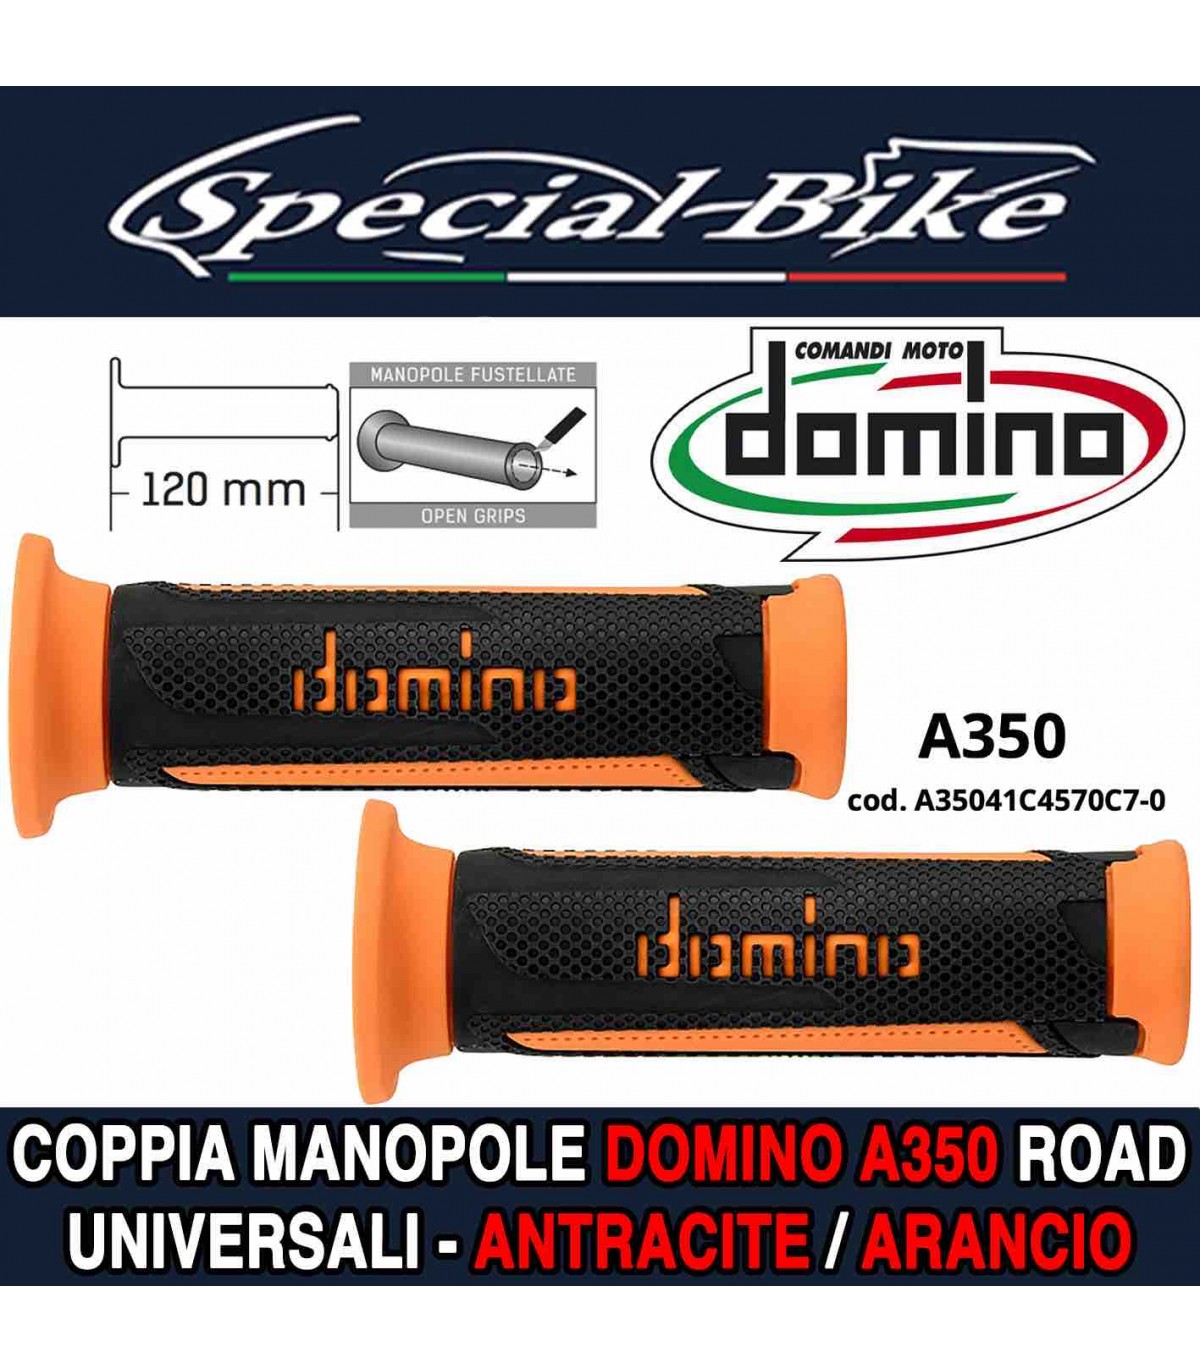 Coppia Manopole Domino A350 Road per Moto Scooter Antracite Arancio